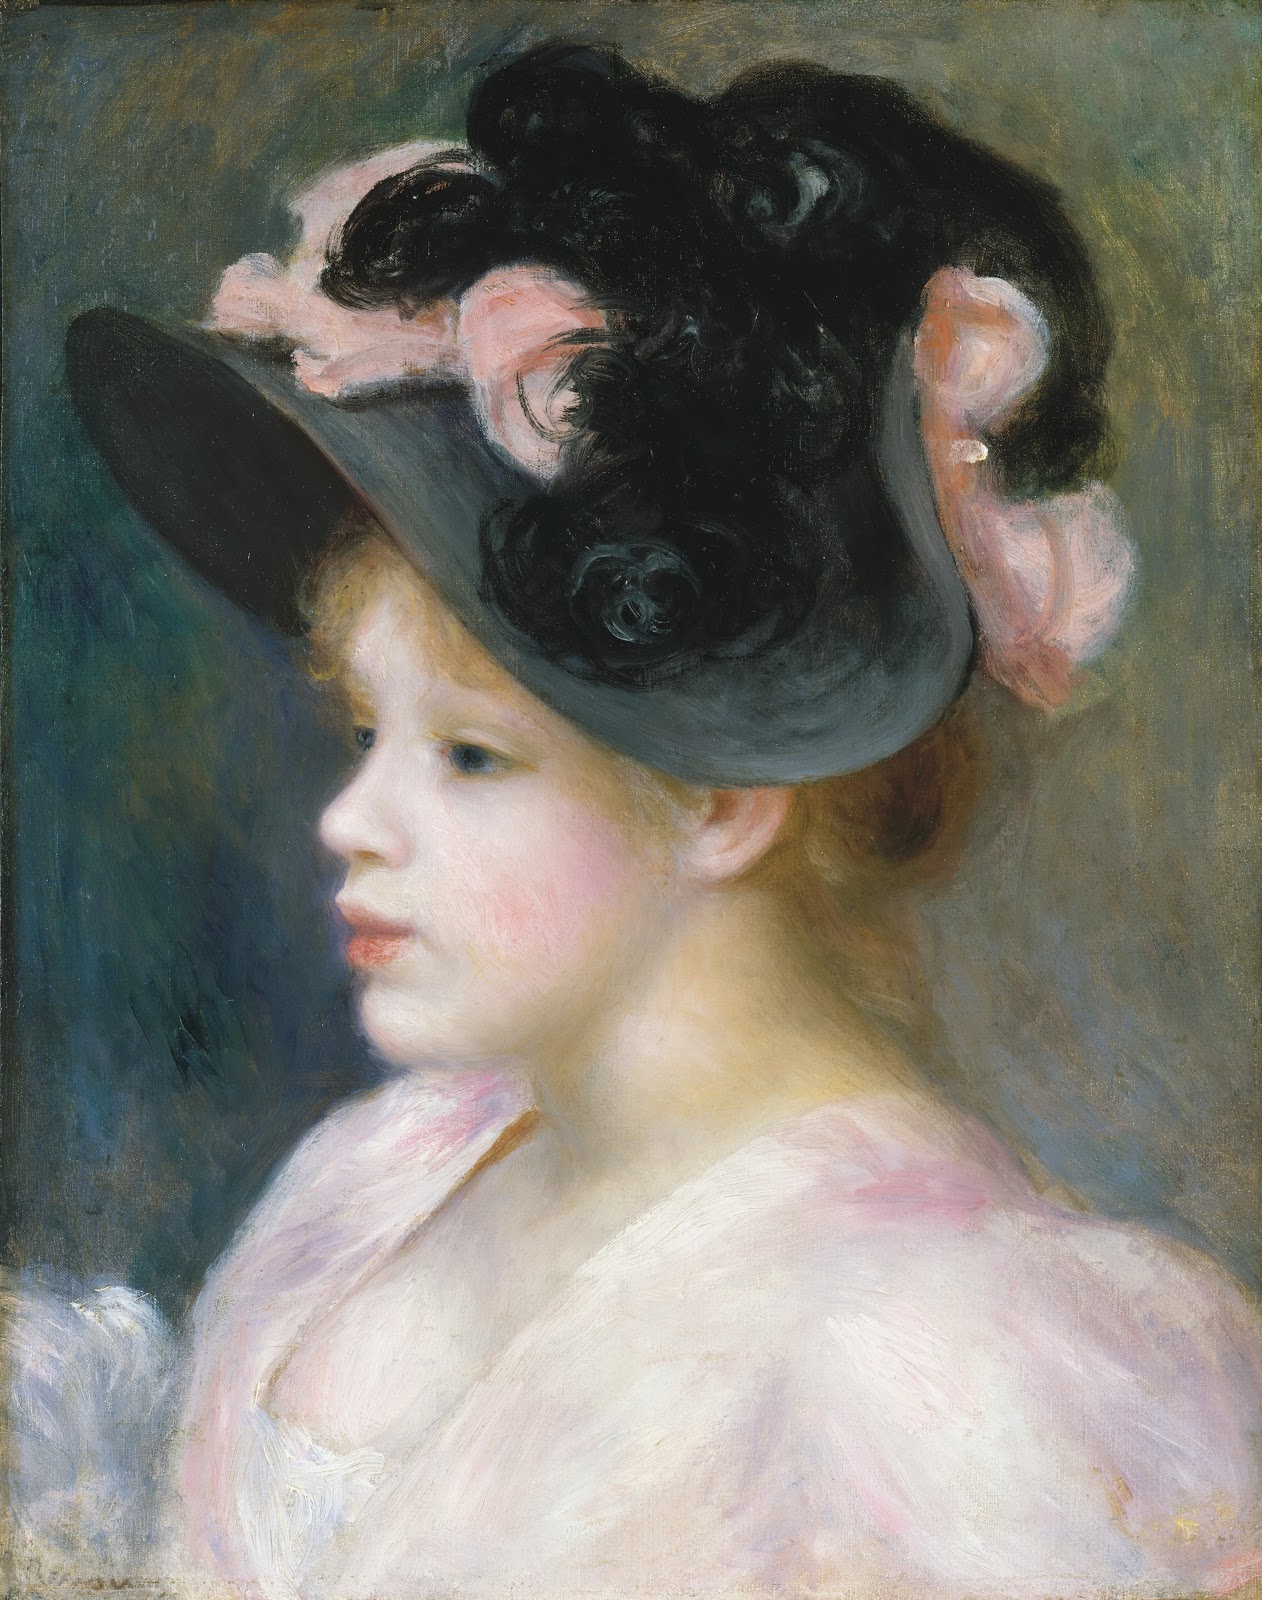 Pierre+Auguste+Renoir-1841-1-19 (895).jpg